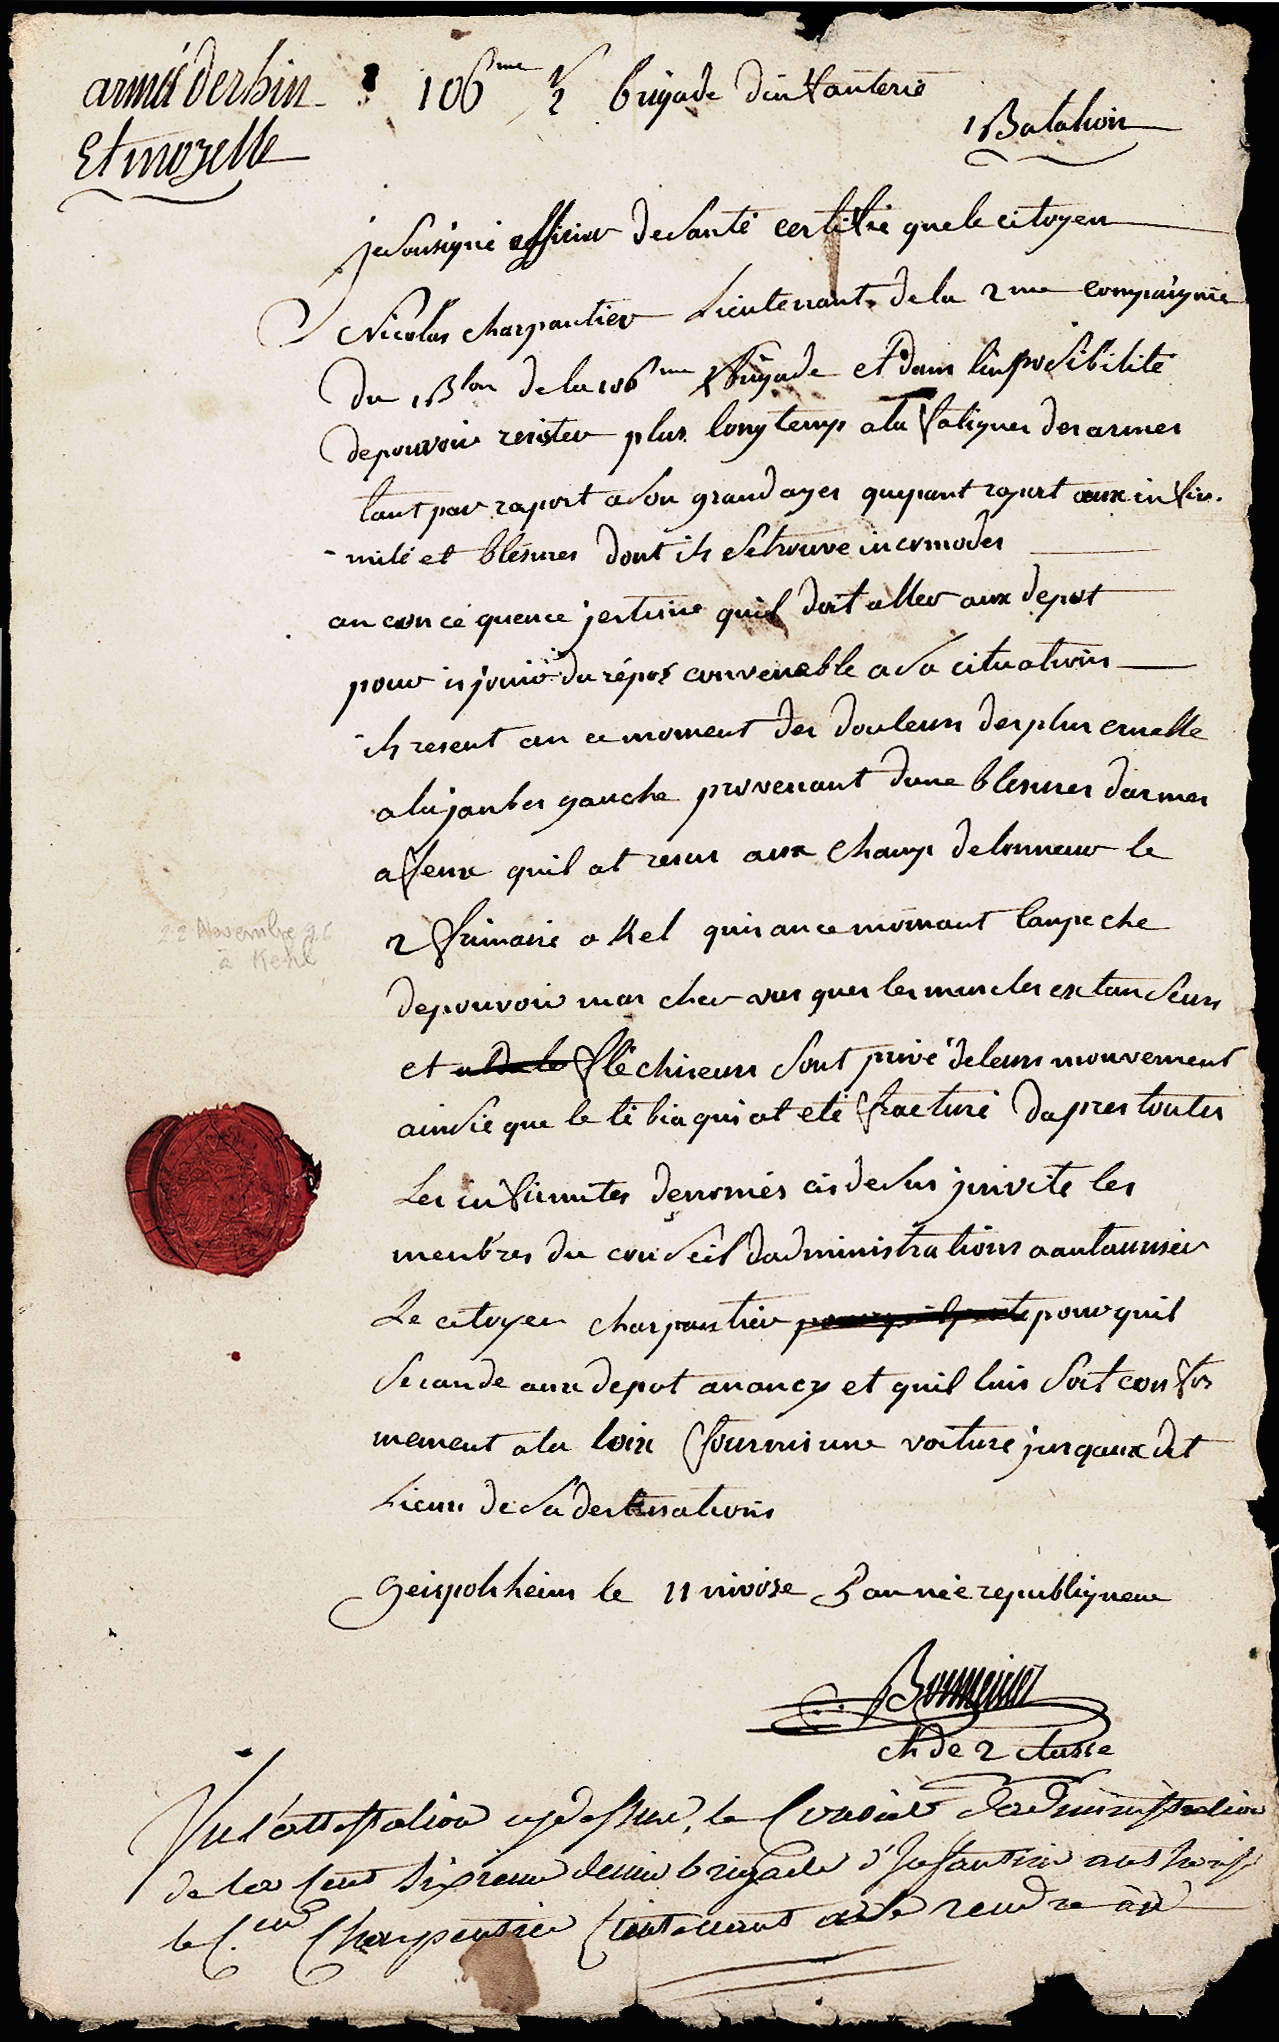 Referenz: lecourbe-claude-jacques-general-servit-a-l-armee-d-helvetie-en-179899